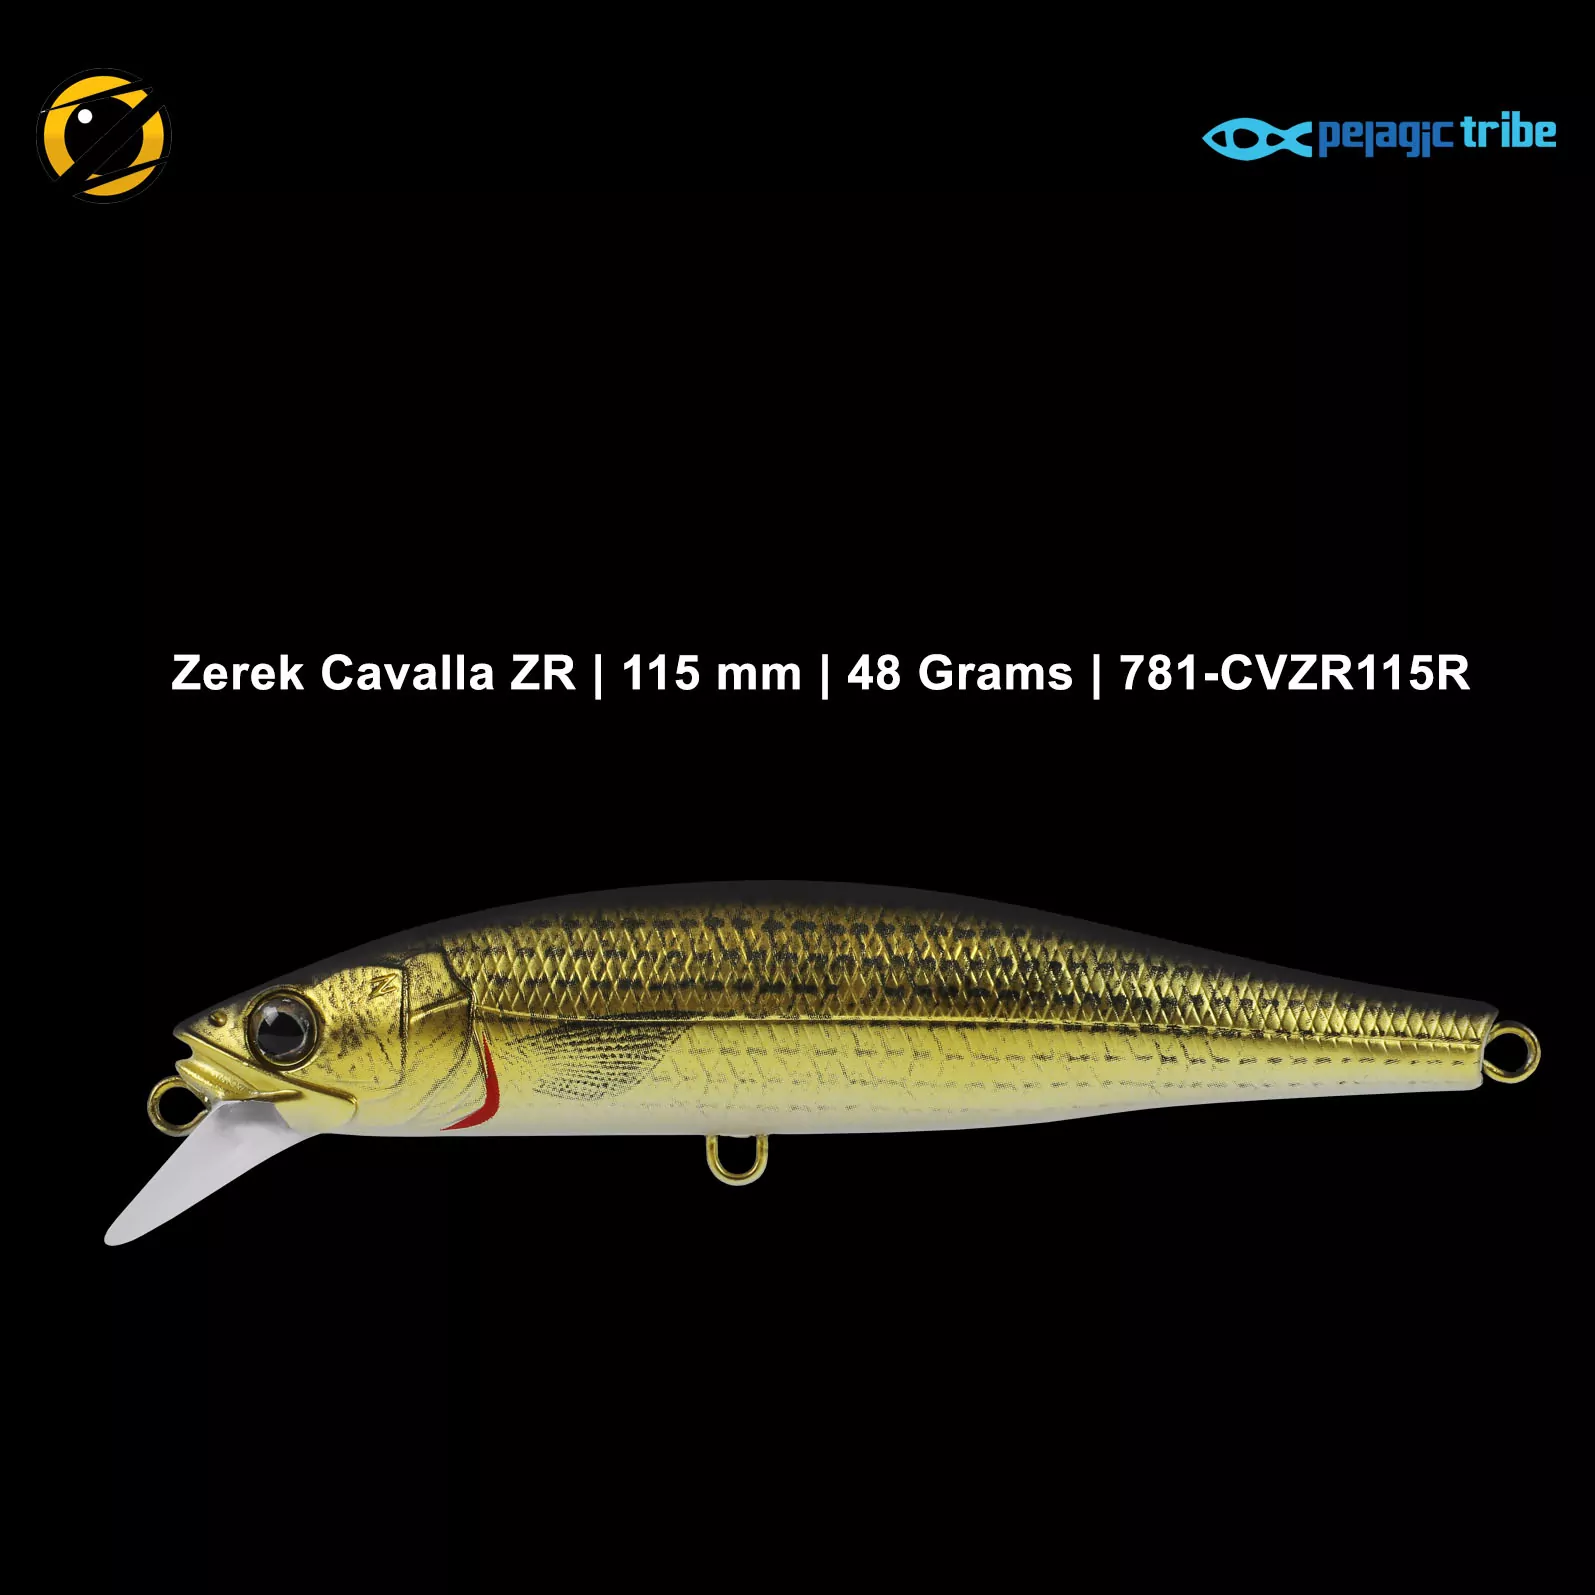 Zerek Cavalla ZR, 115 mm, 48 Grams